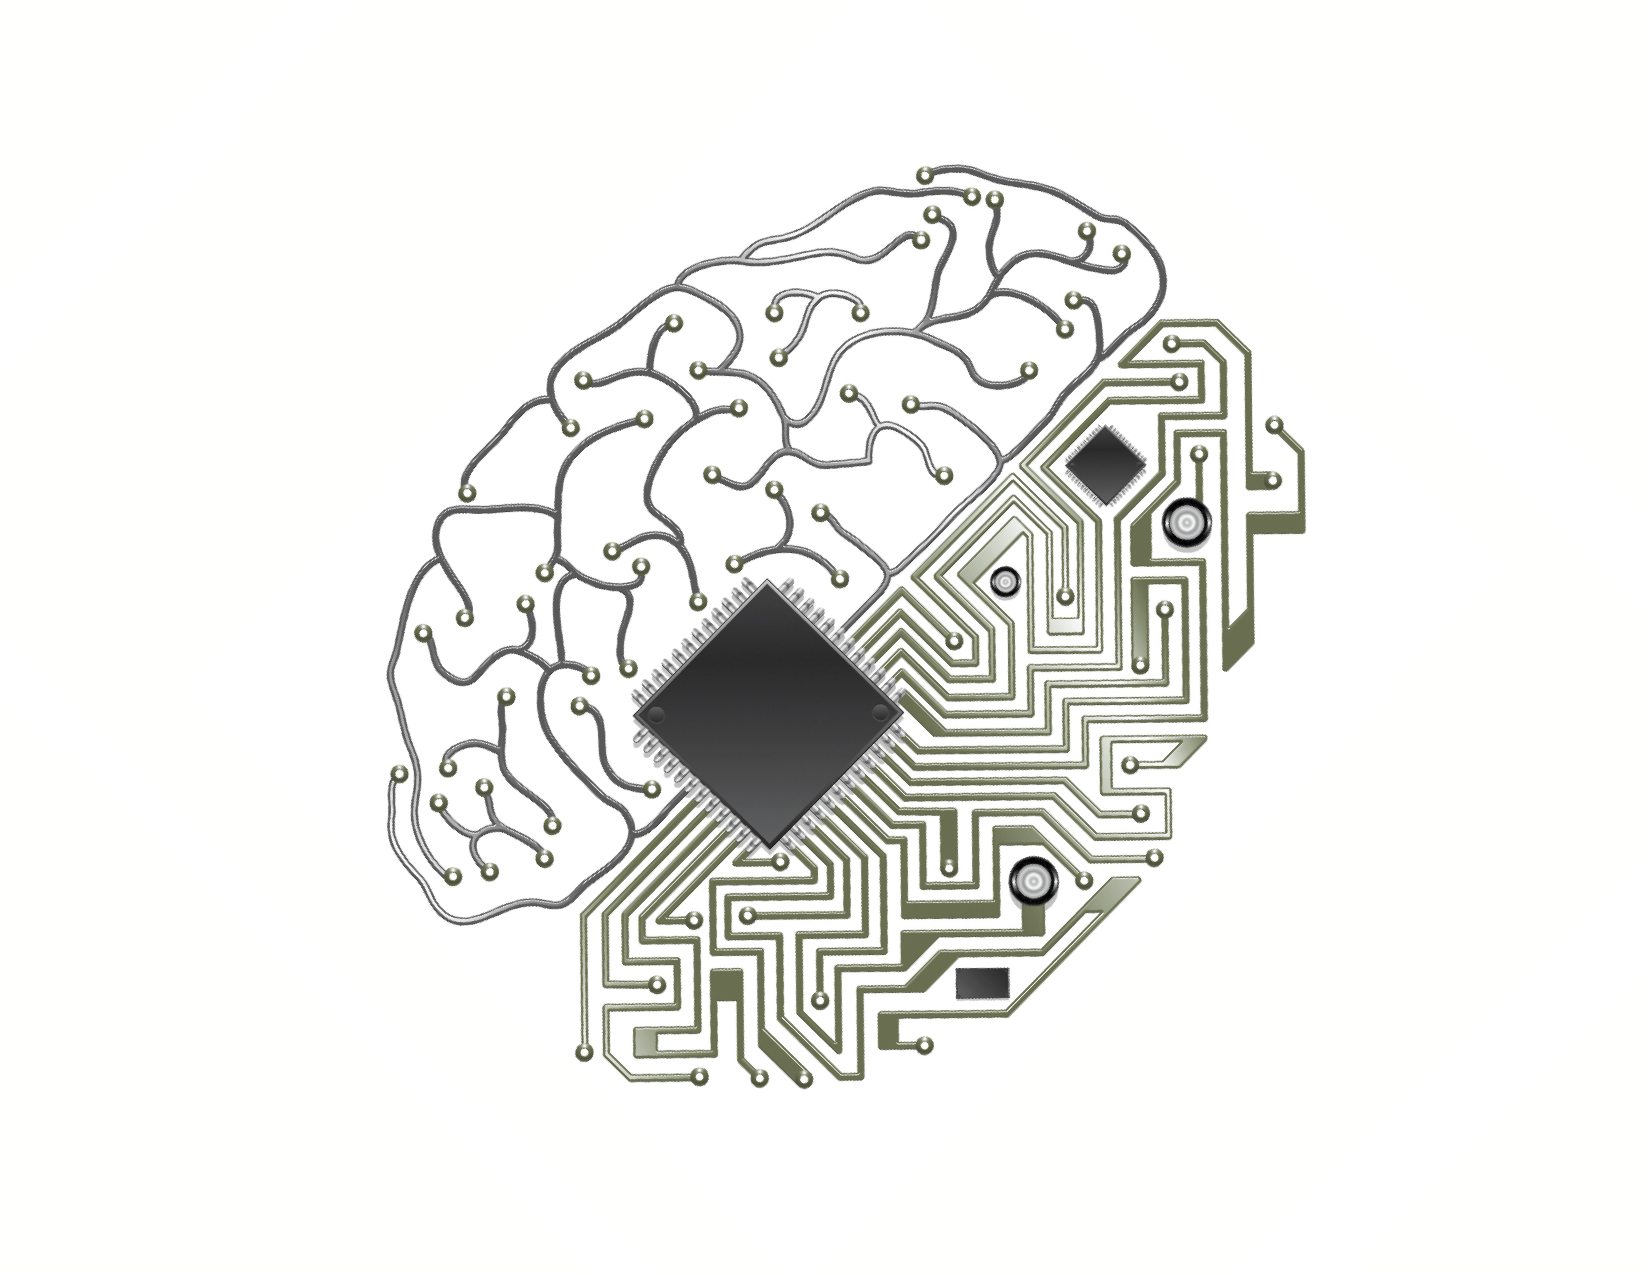 BCI - Brain-Computer Interface Technology - НКИ - Нейрокомпьютерный интерфейс - Нейроинтерфейсы между мозгом и машиной